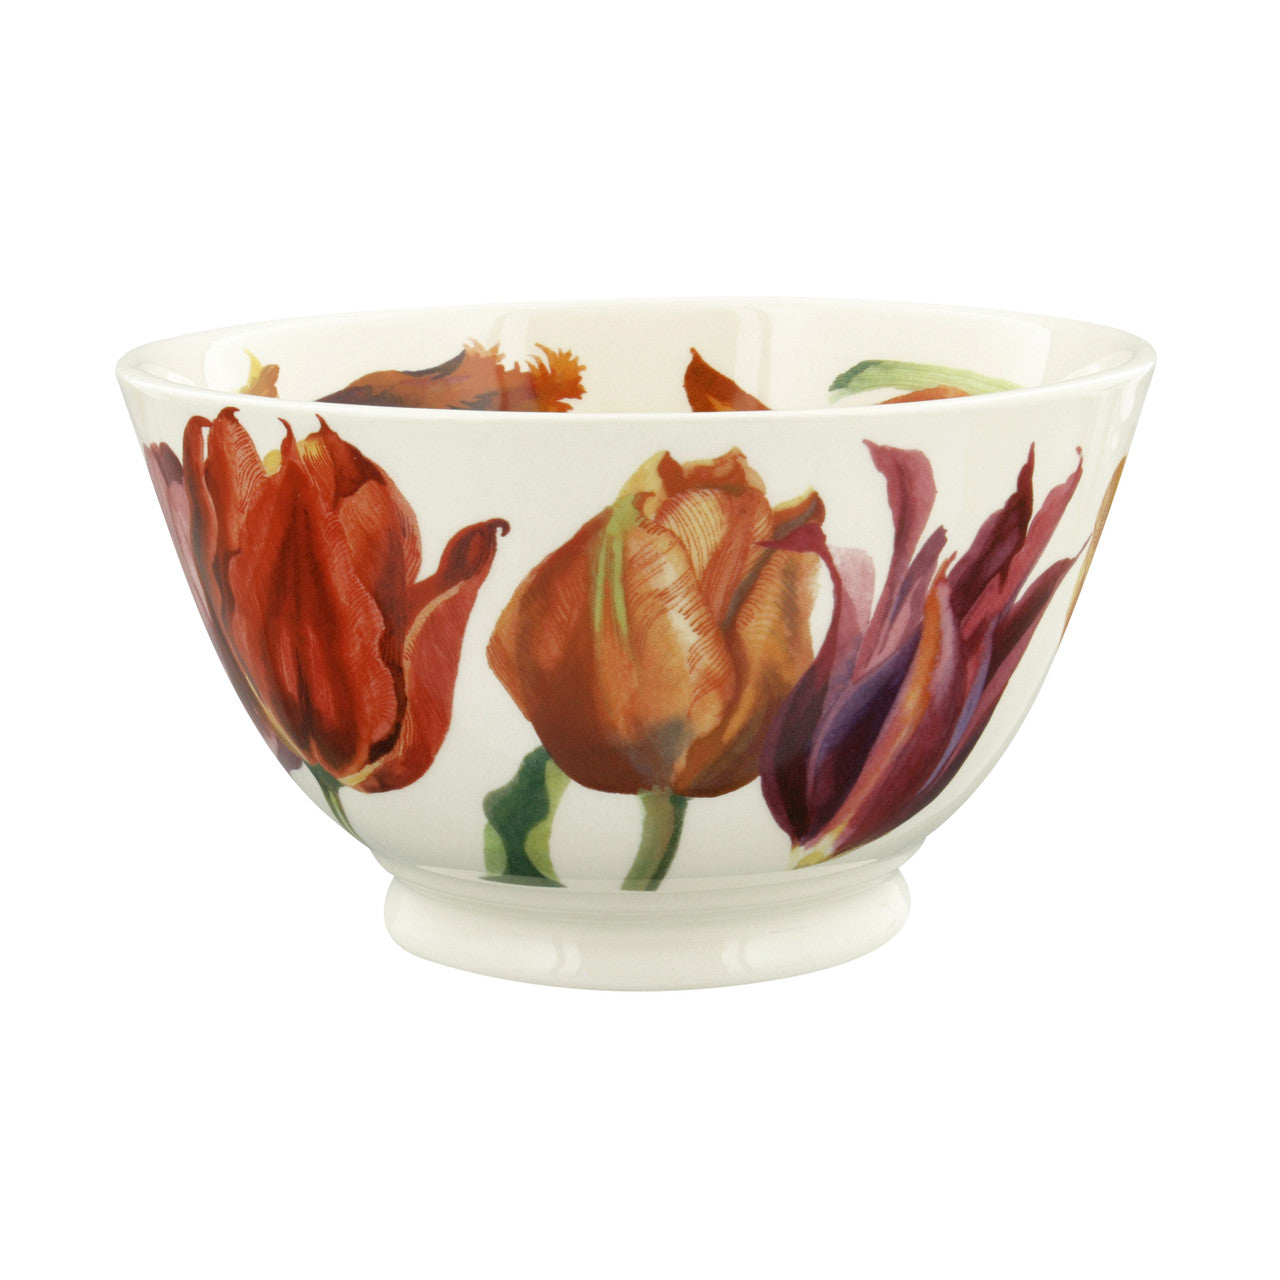 Emma Bridgewater Flowers Tulips Medium Old Bowl